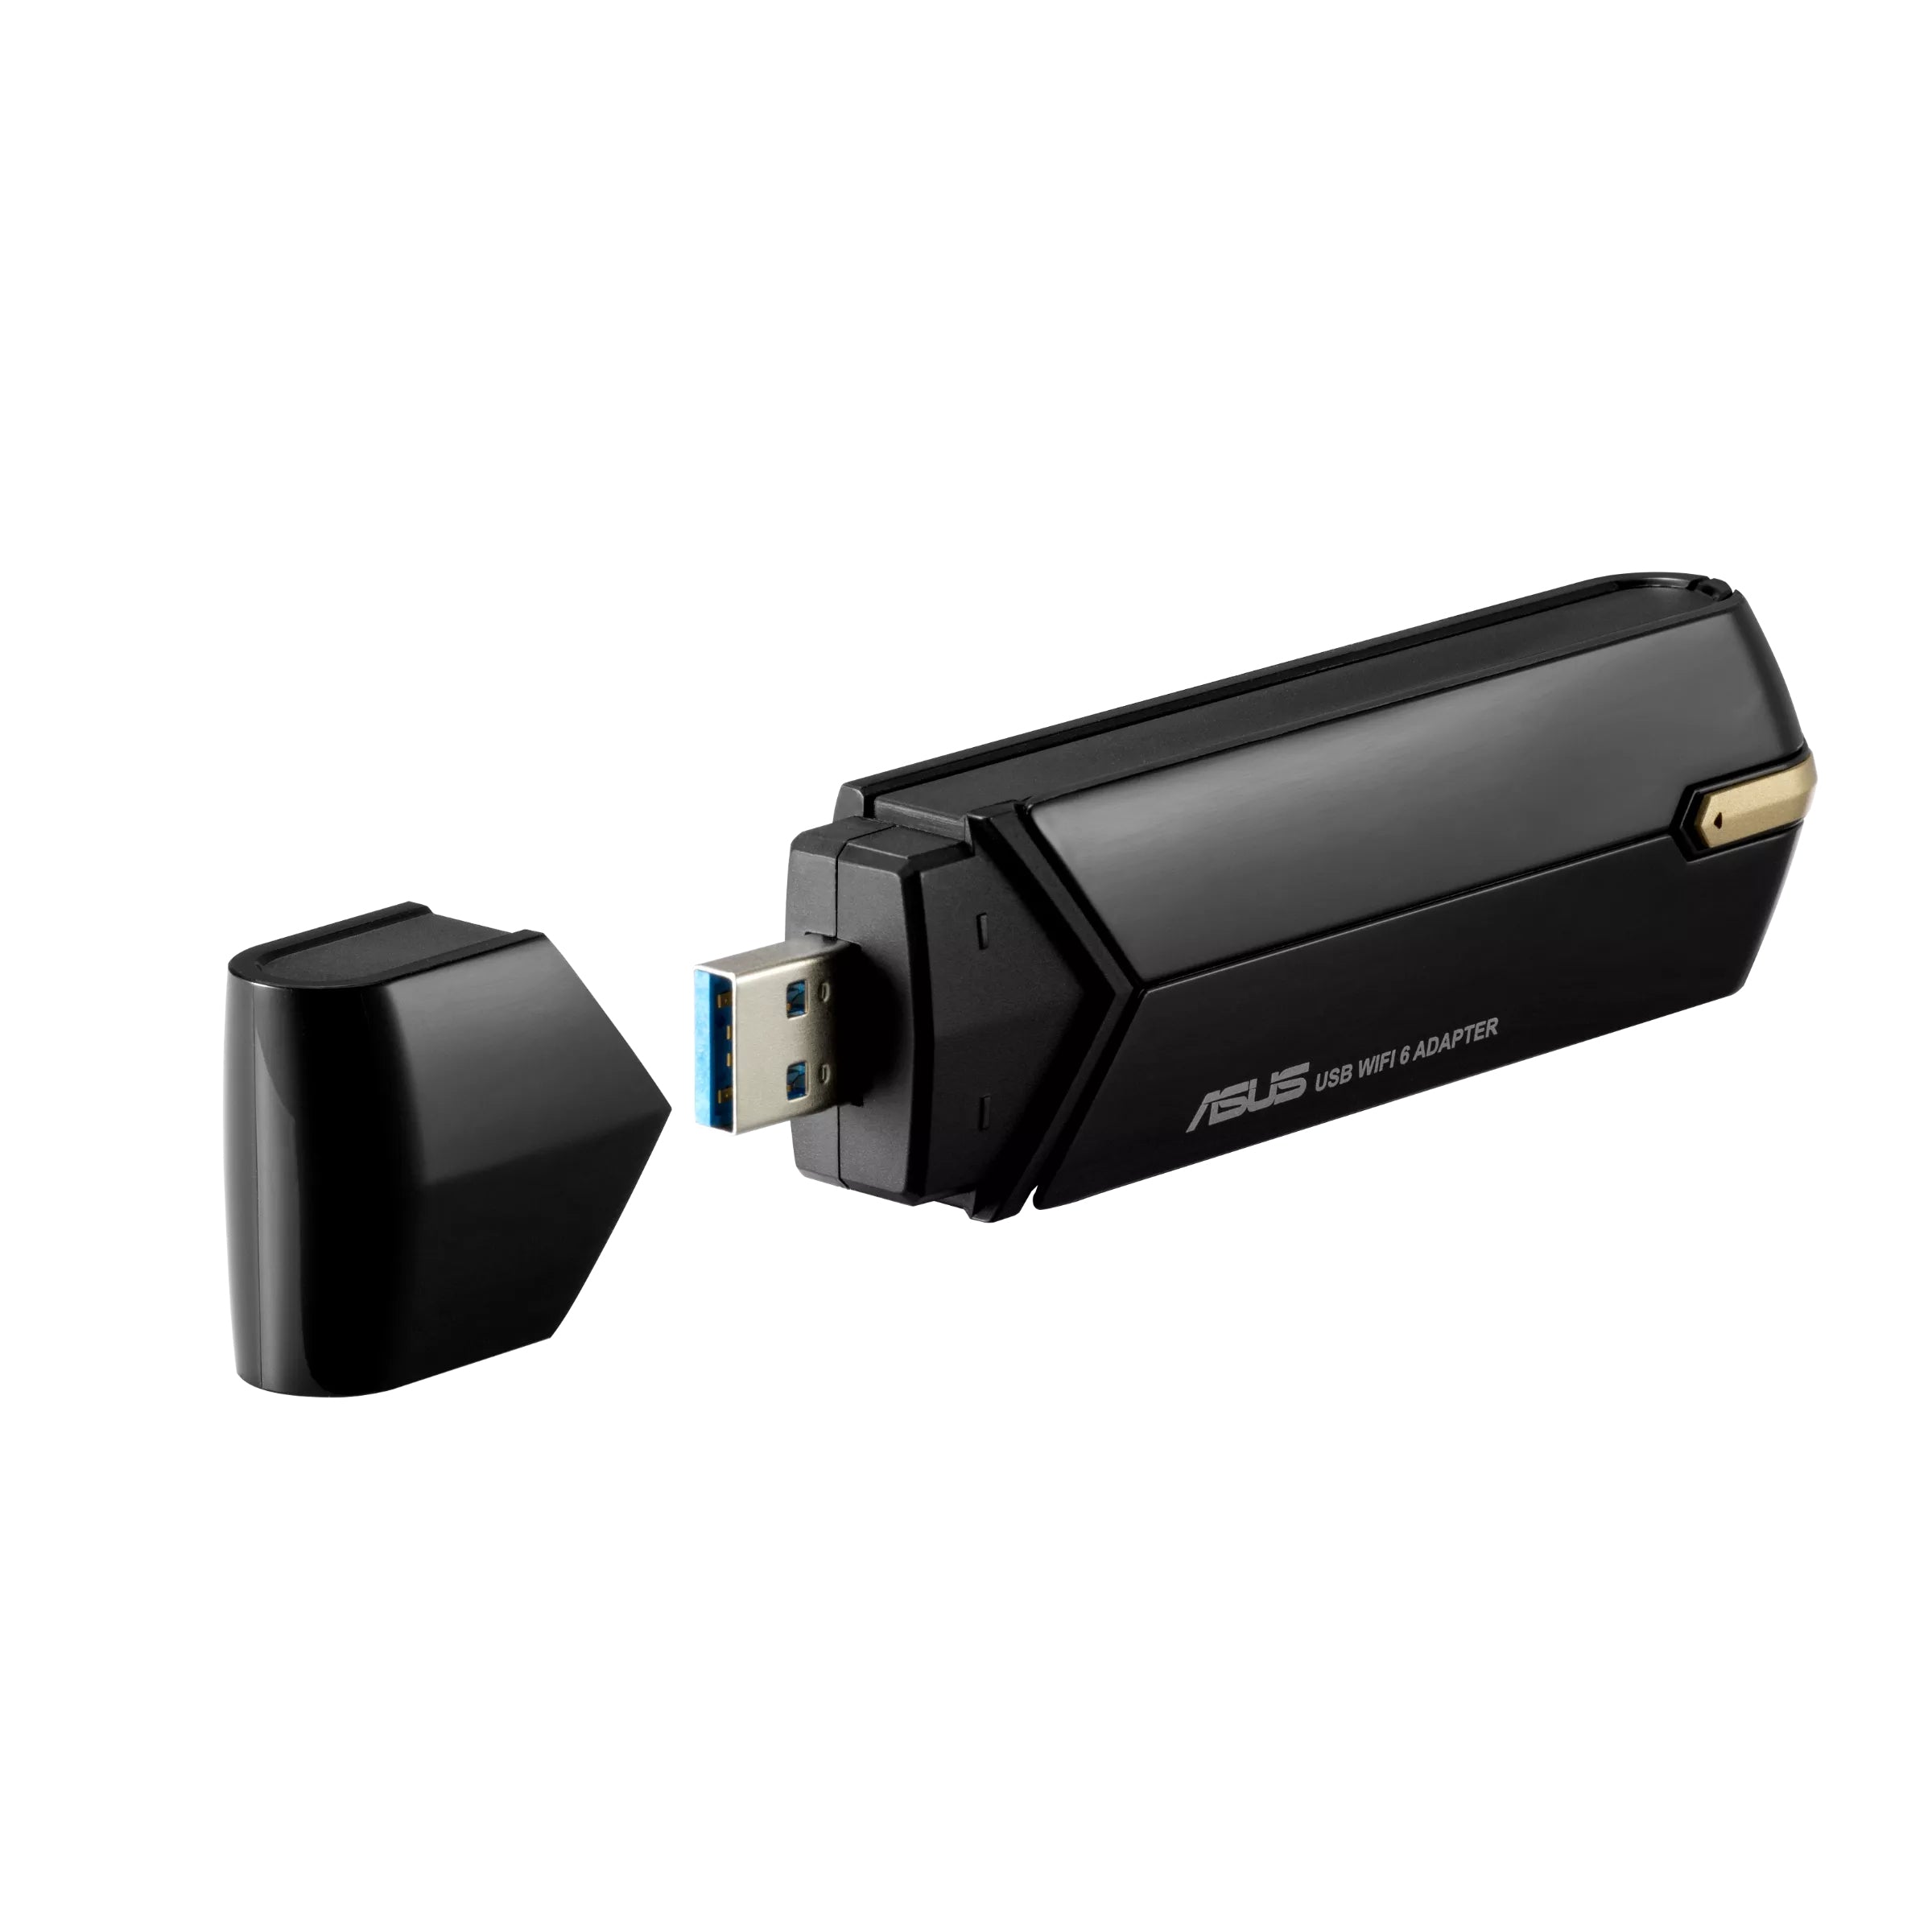 ASUS Netzwerkadapter USB Wireless